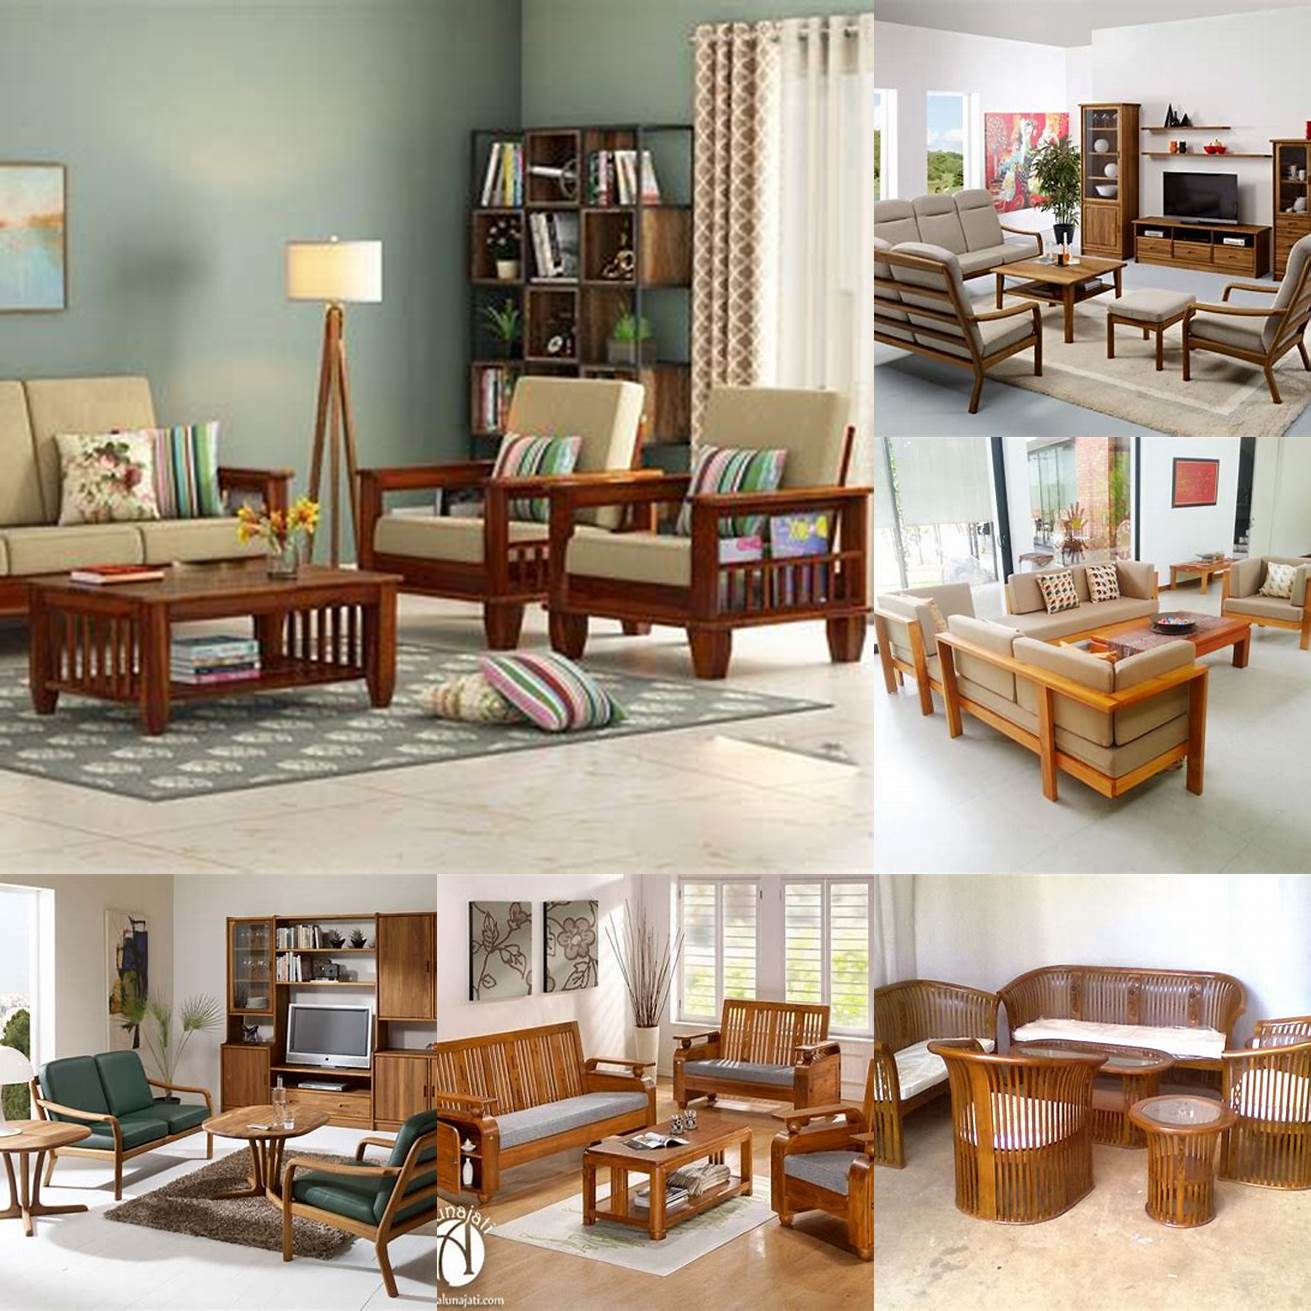 Teak Wood Furniture in Living Room